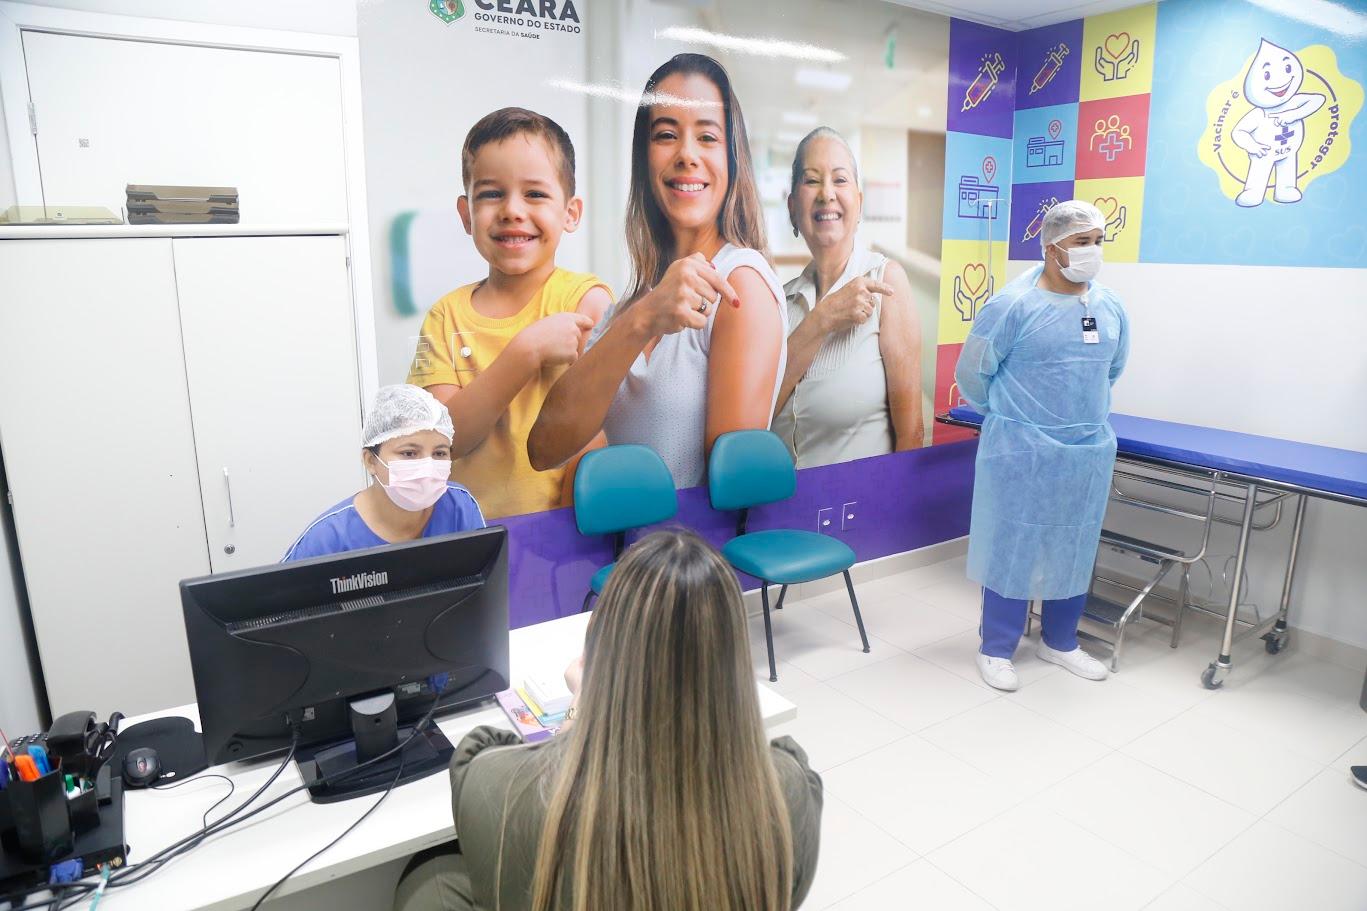 Cries buscam fortalecer o Programa Nacional de Imunizações (PNI) no Ceará